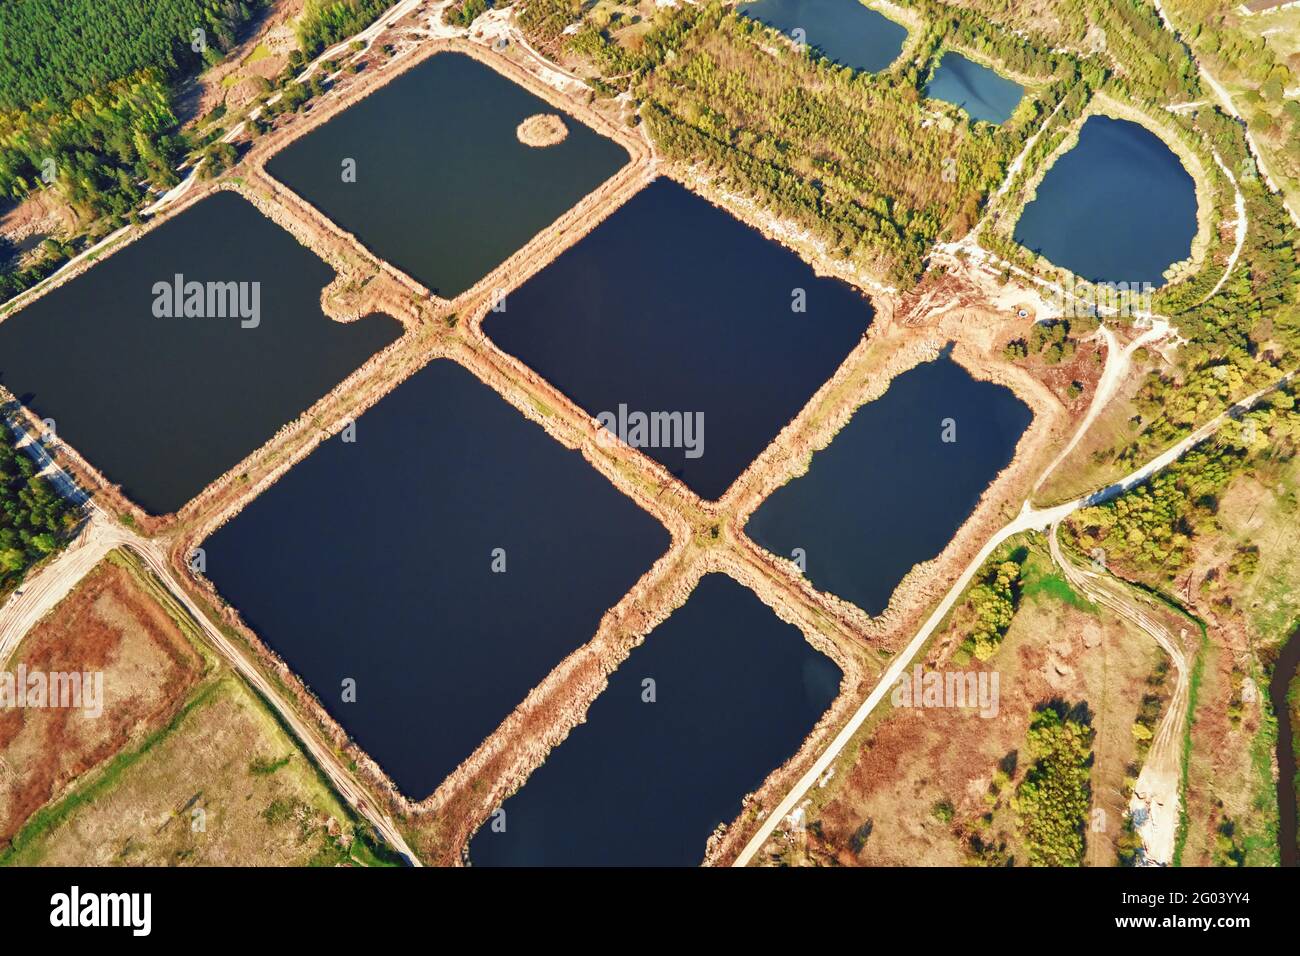 Vue aérienne des étangs pour recueillir les eaux pluviales. Bassins de rétention d'eau de pluie, vue plongeante. Piscines artificielles pour système d'irrigation Banque D'Images